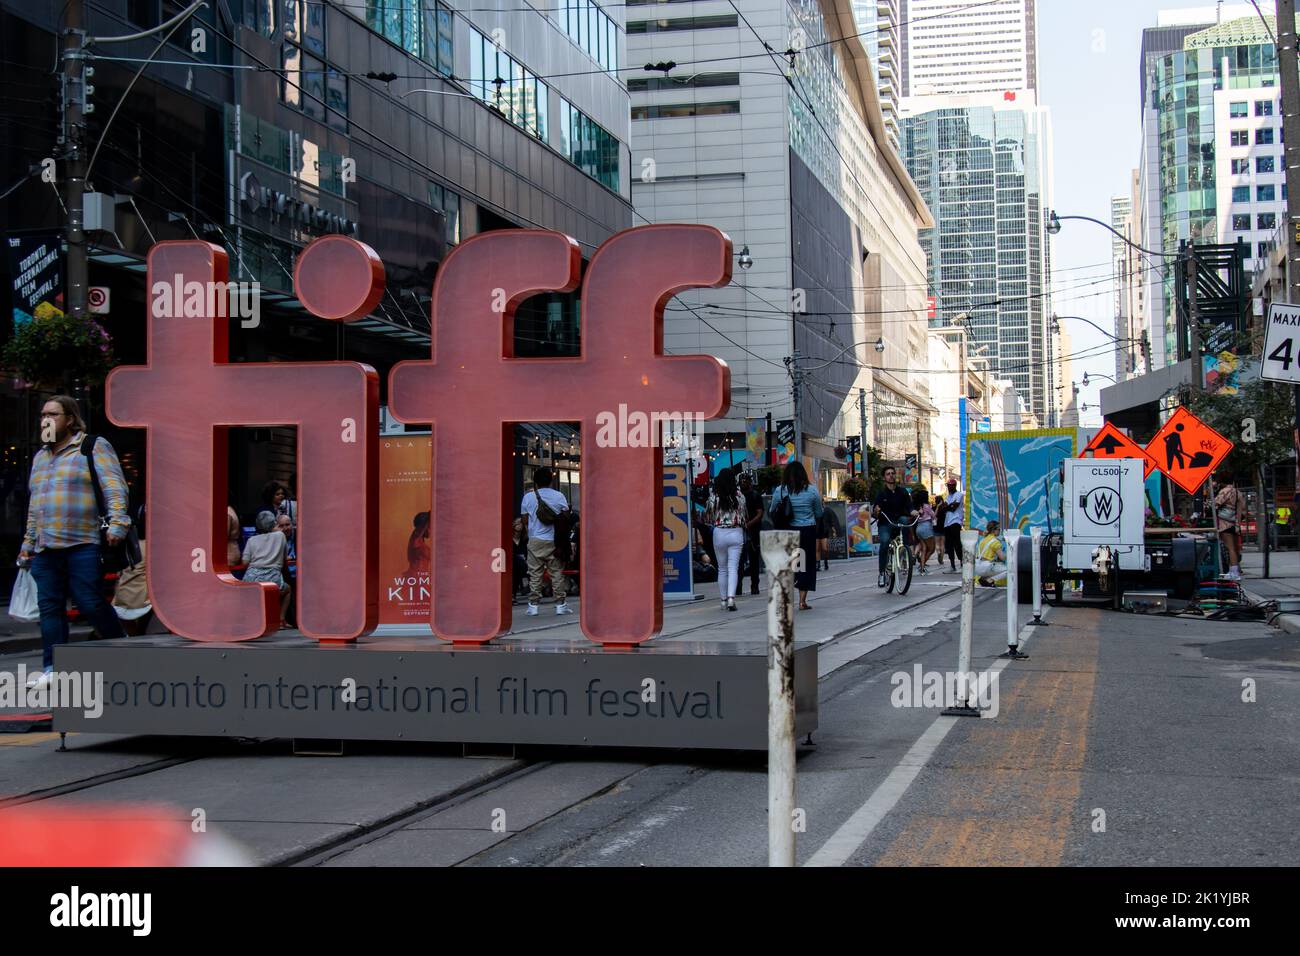 Un TIFF, Toronto International film Festival signe à l'entrée de la rue King pendant la journée au populaire festival du film dans le centre-ville de Toronto. Banque D'Images